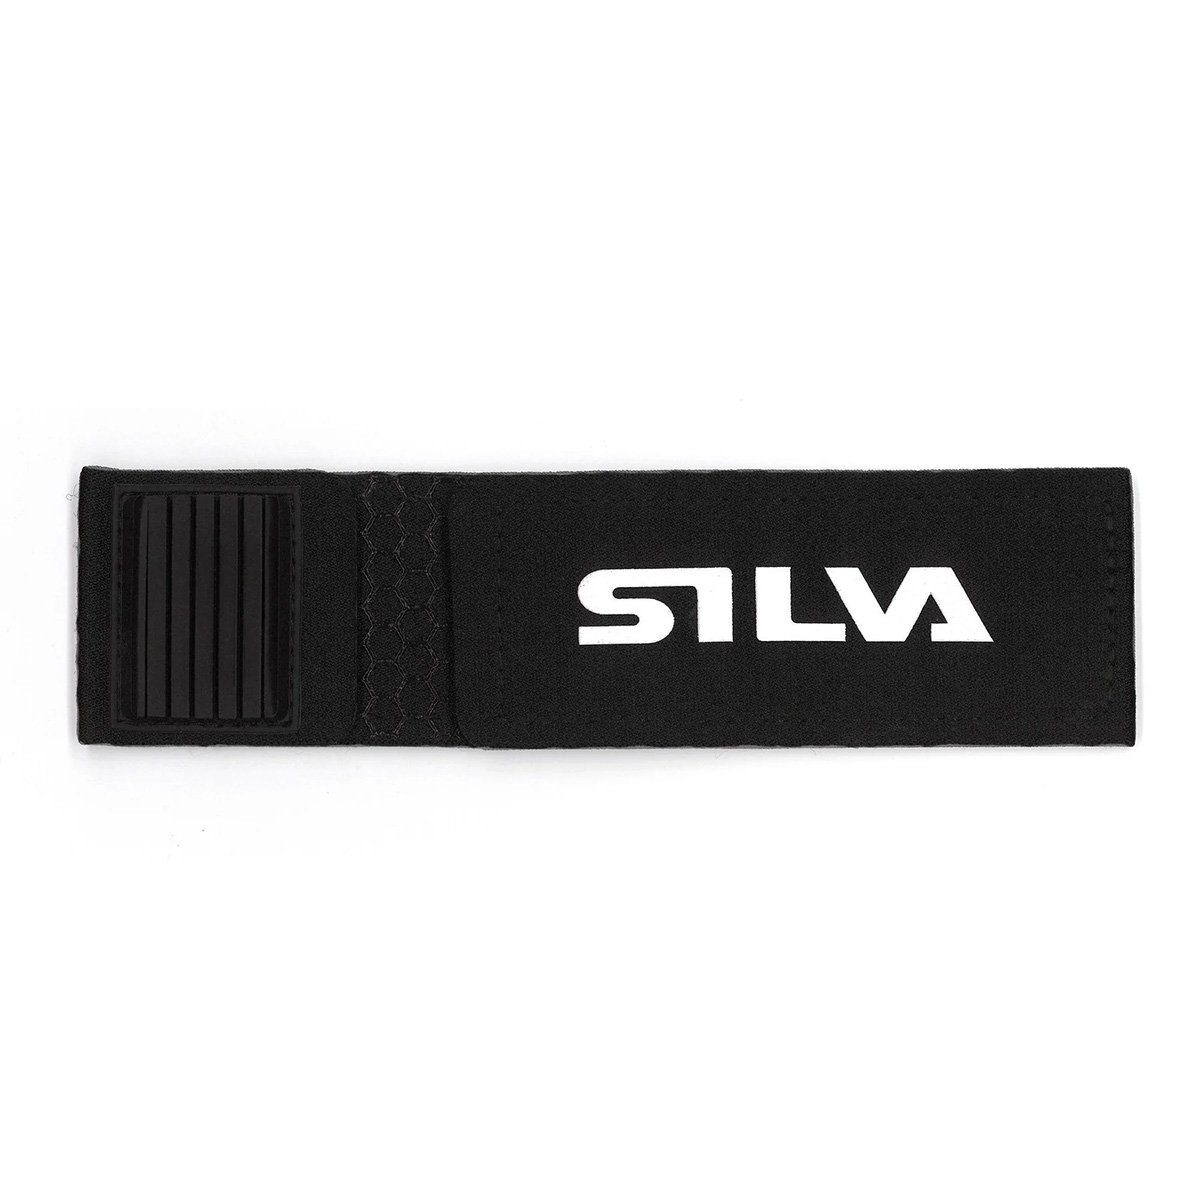 Silva LED Taschenlampe Battery Velcro Strap